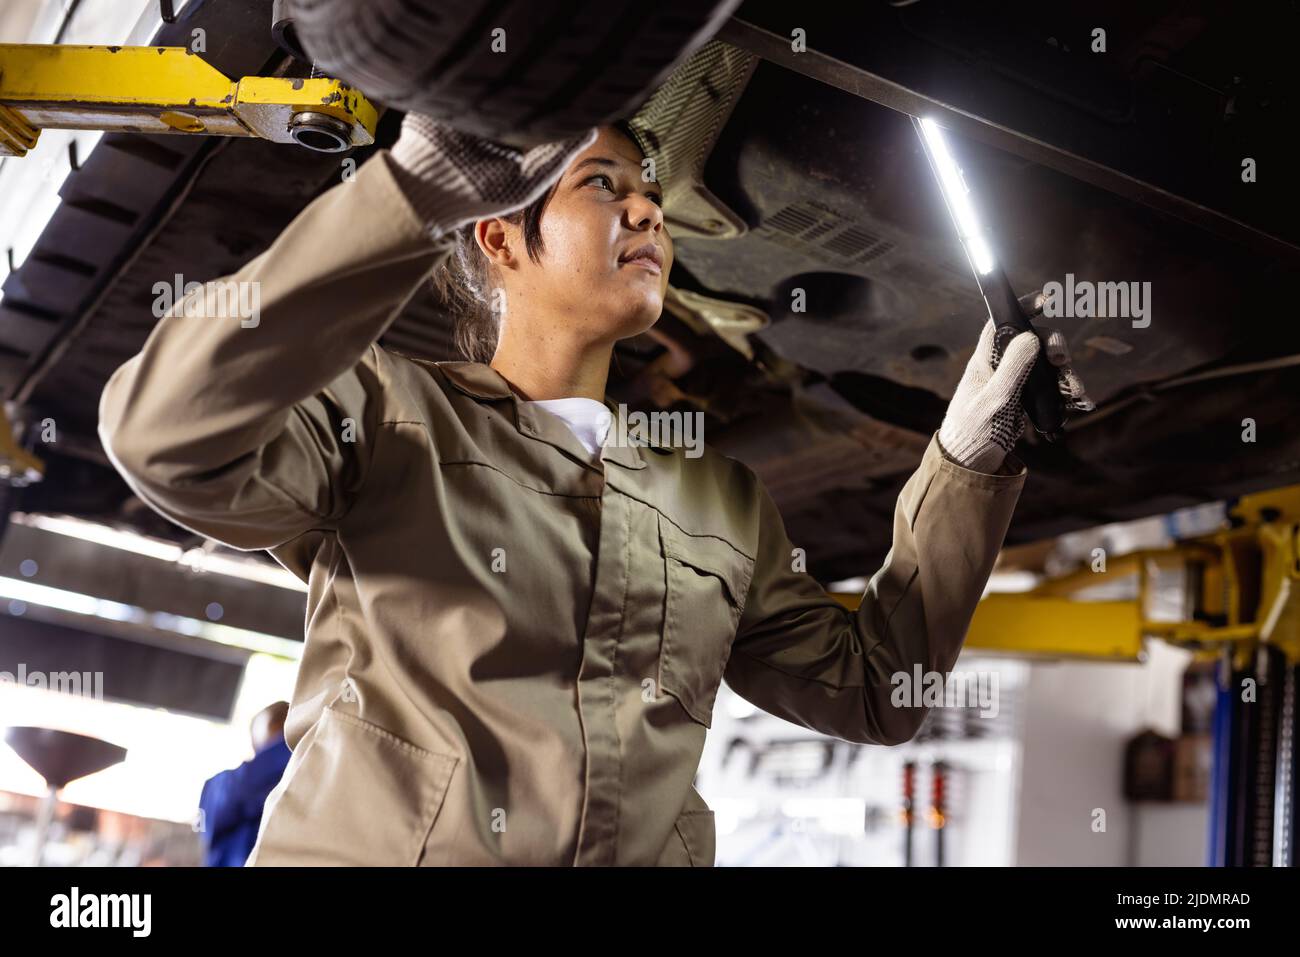 Mittlere Erwachsene asiatische Technikerin, die Beleuchtungsausrüstung verwendet, während sie ein fehlerhaftes Auto in der Werkstatt analysiert Stockfoto